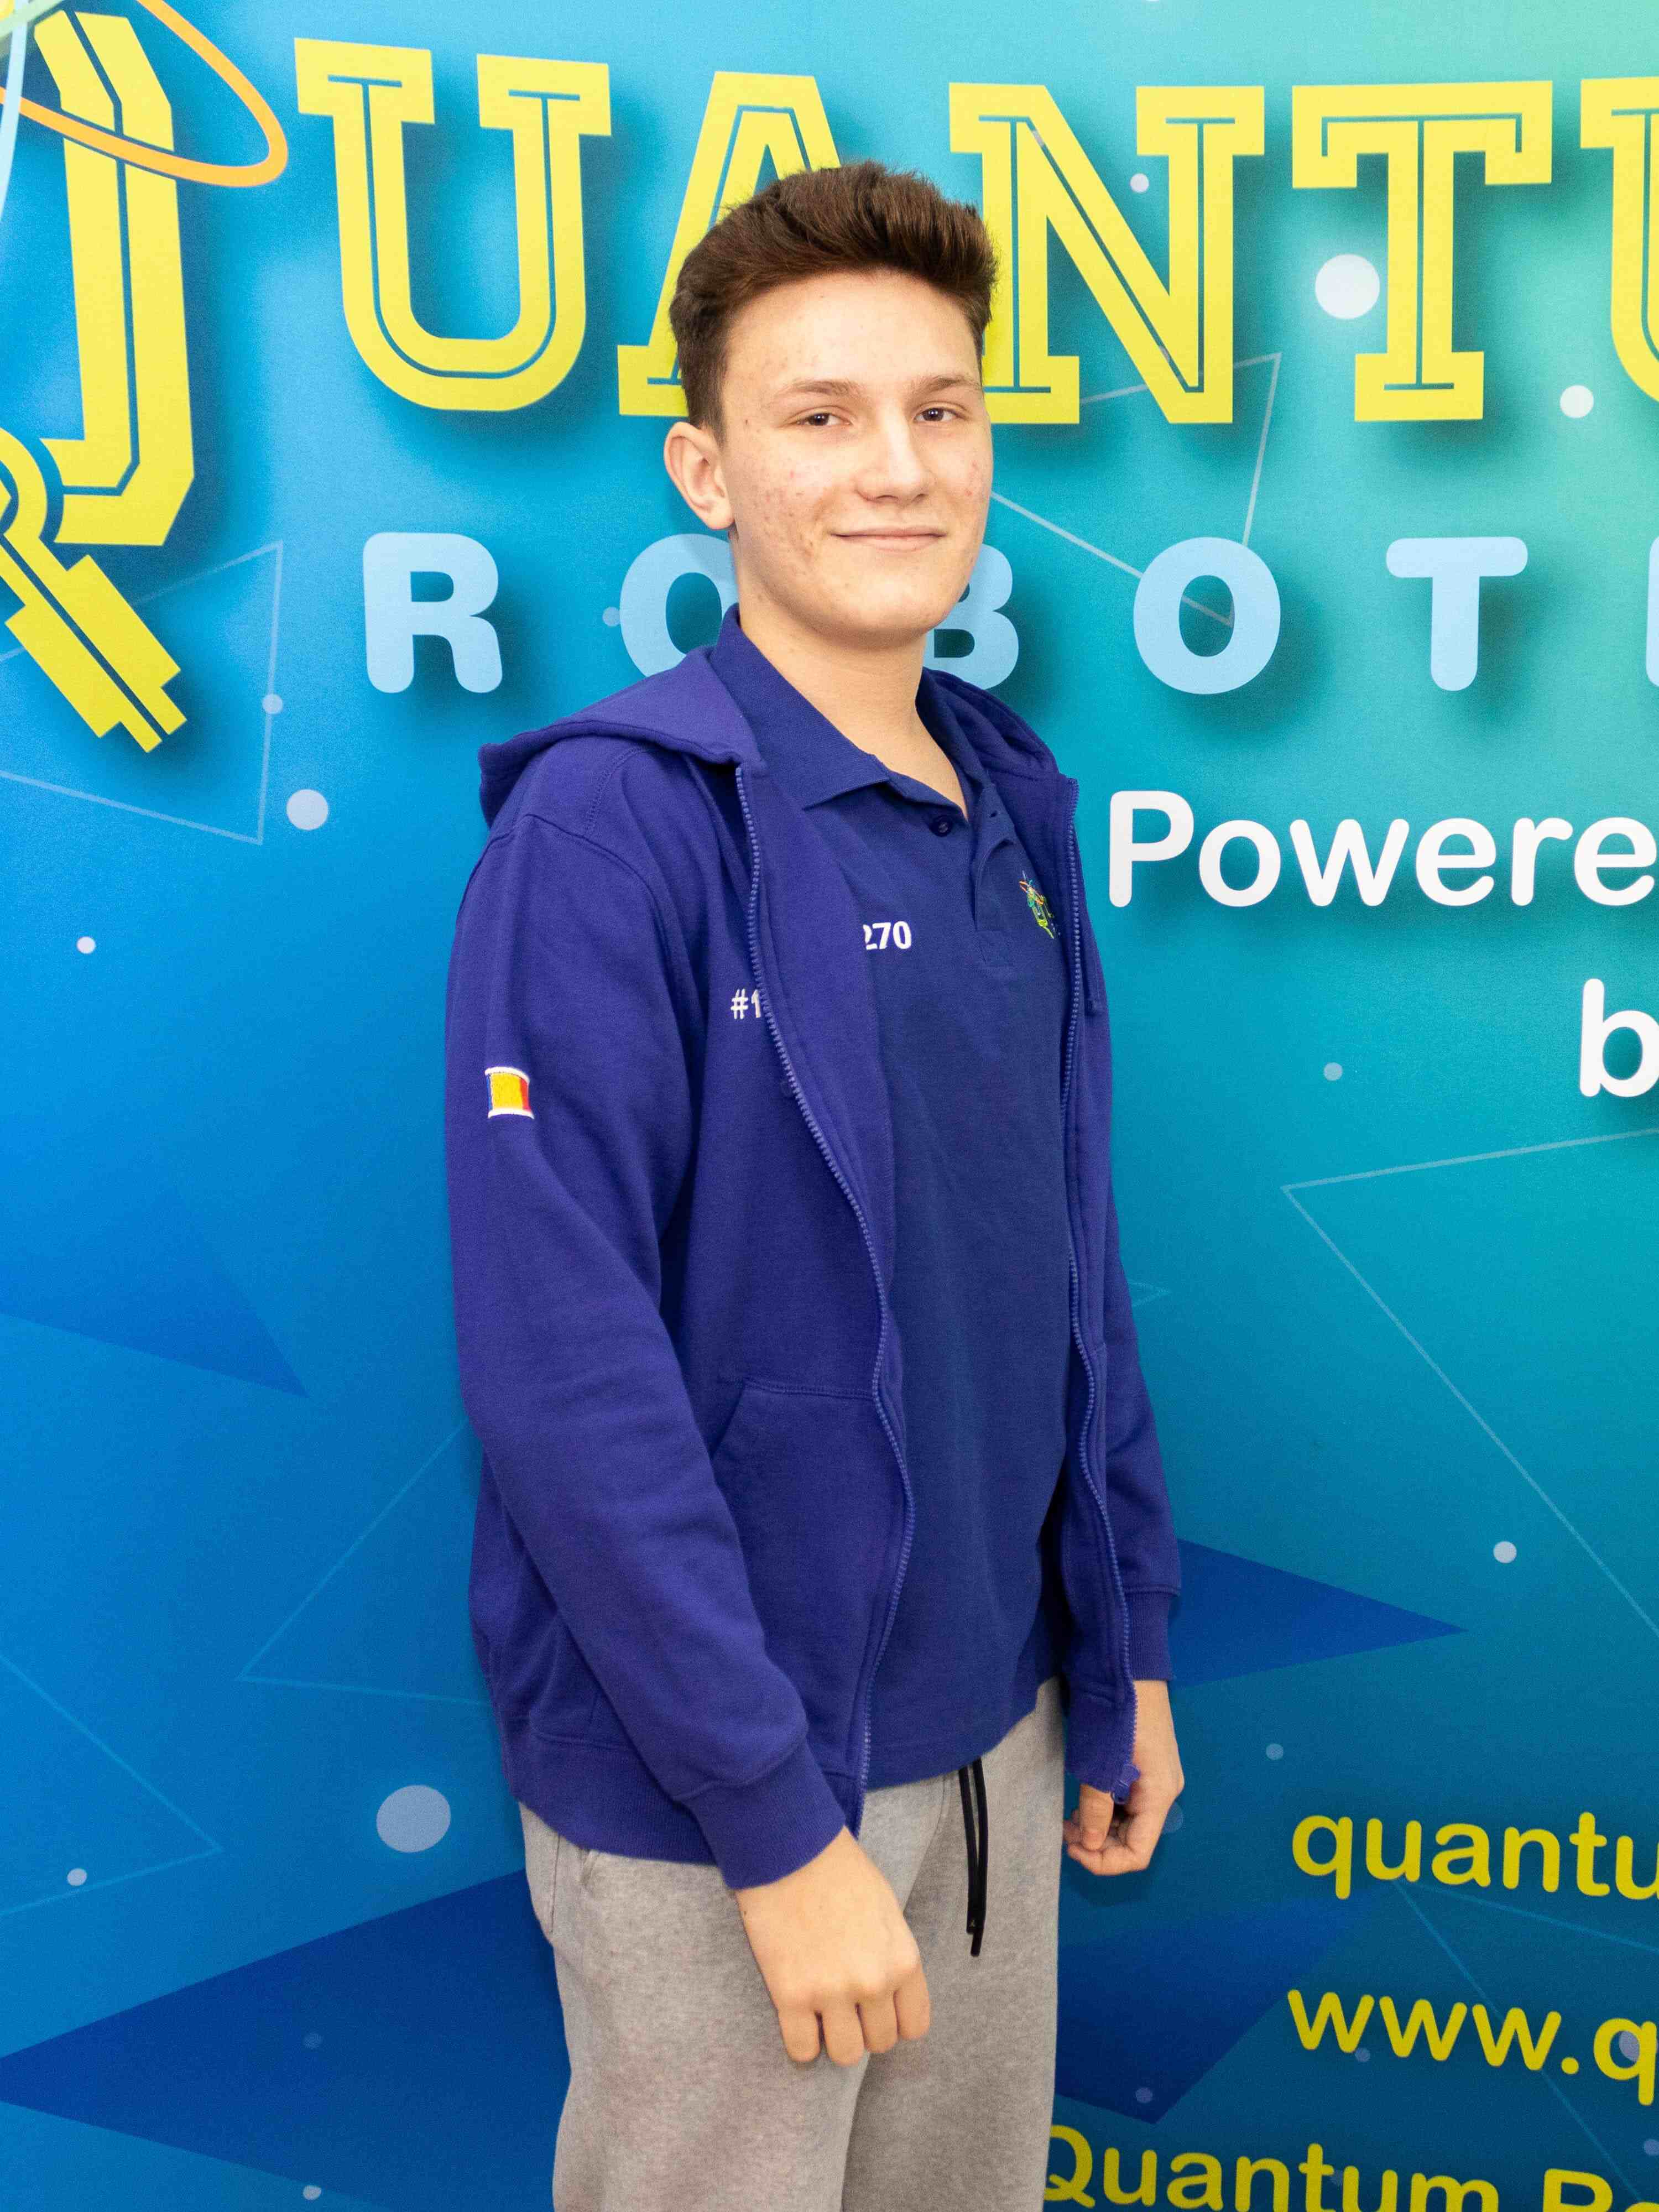 Quantum-Robotics-FTC-FIRST-competiton-team-members-Luca-Miscoci